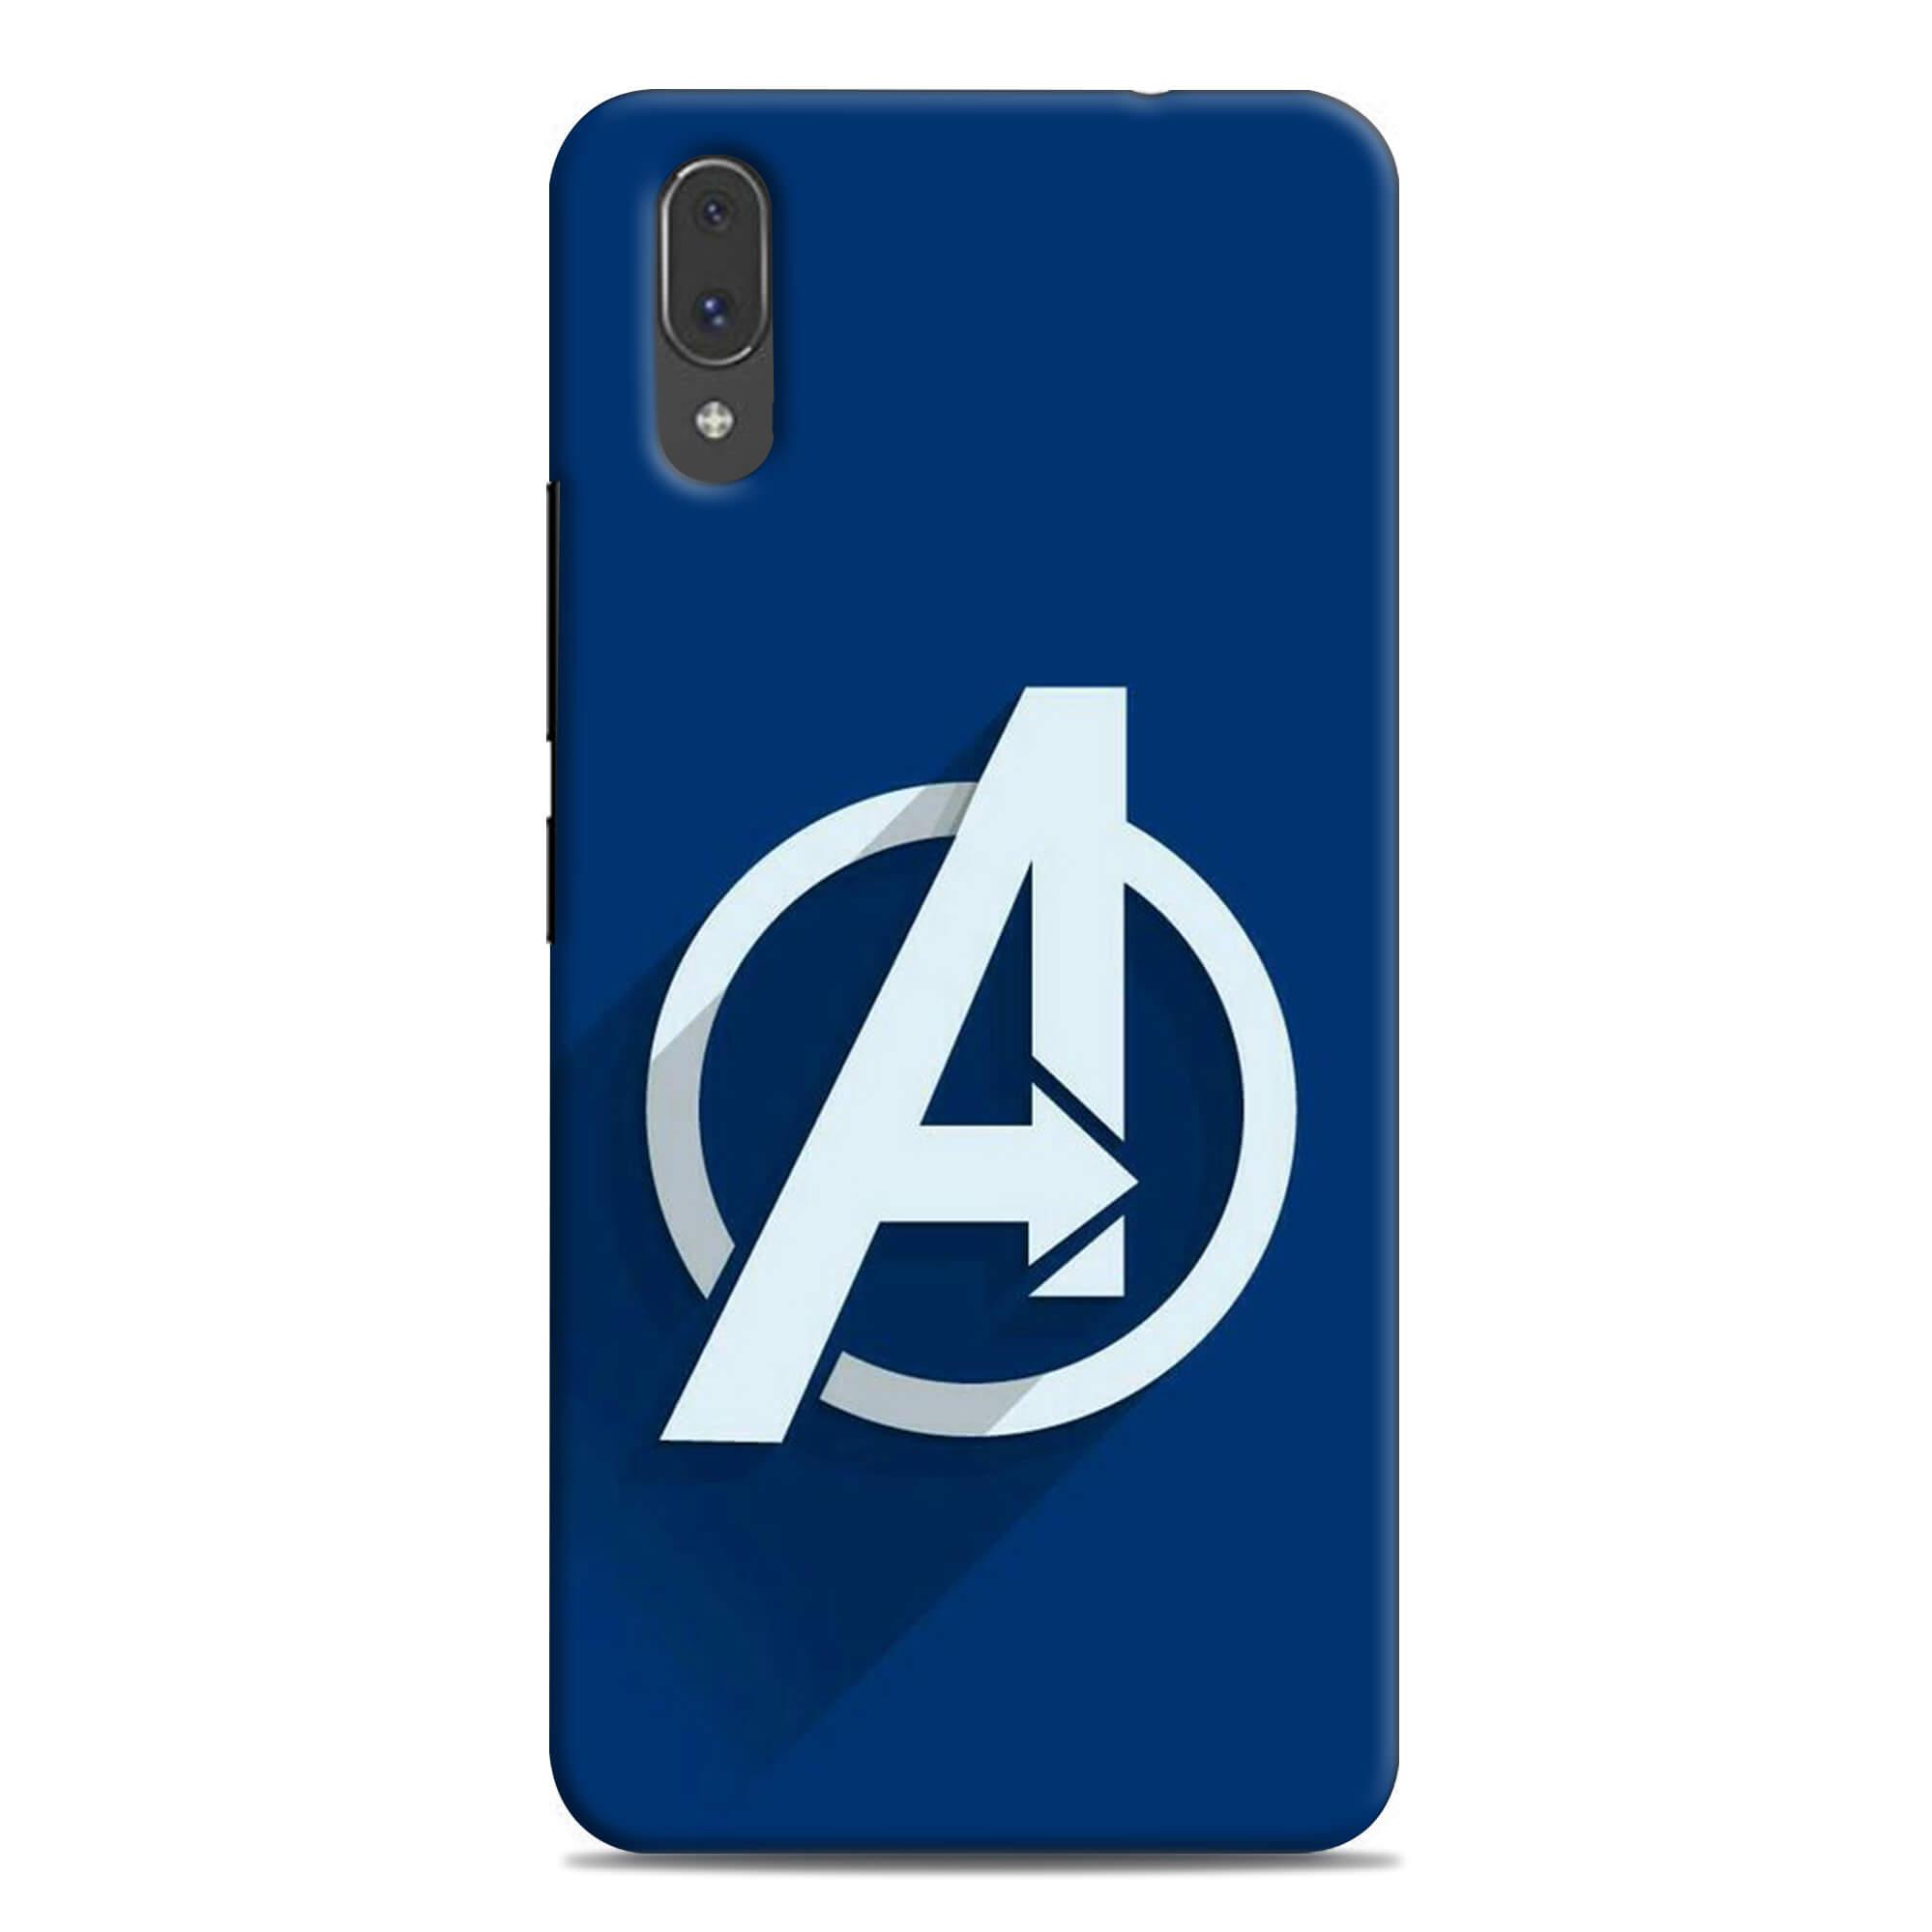 Vivo Phone Logo - Avengers logo design VIVO V11 PRO mobile case –